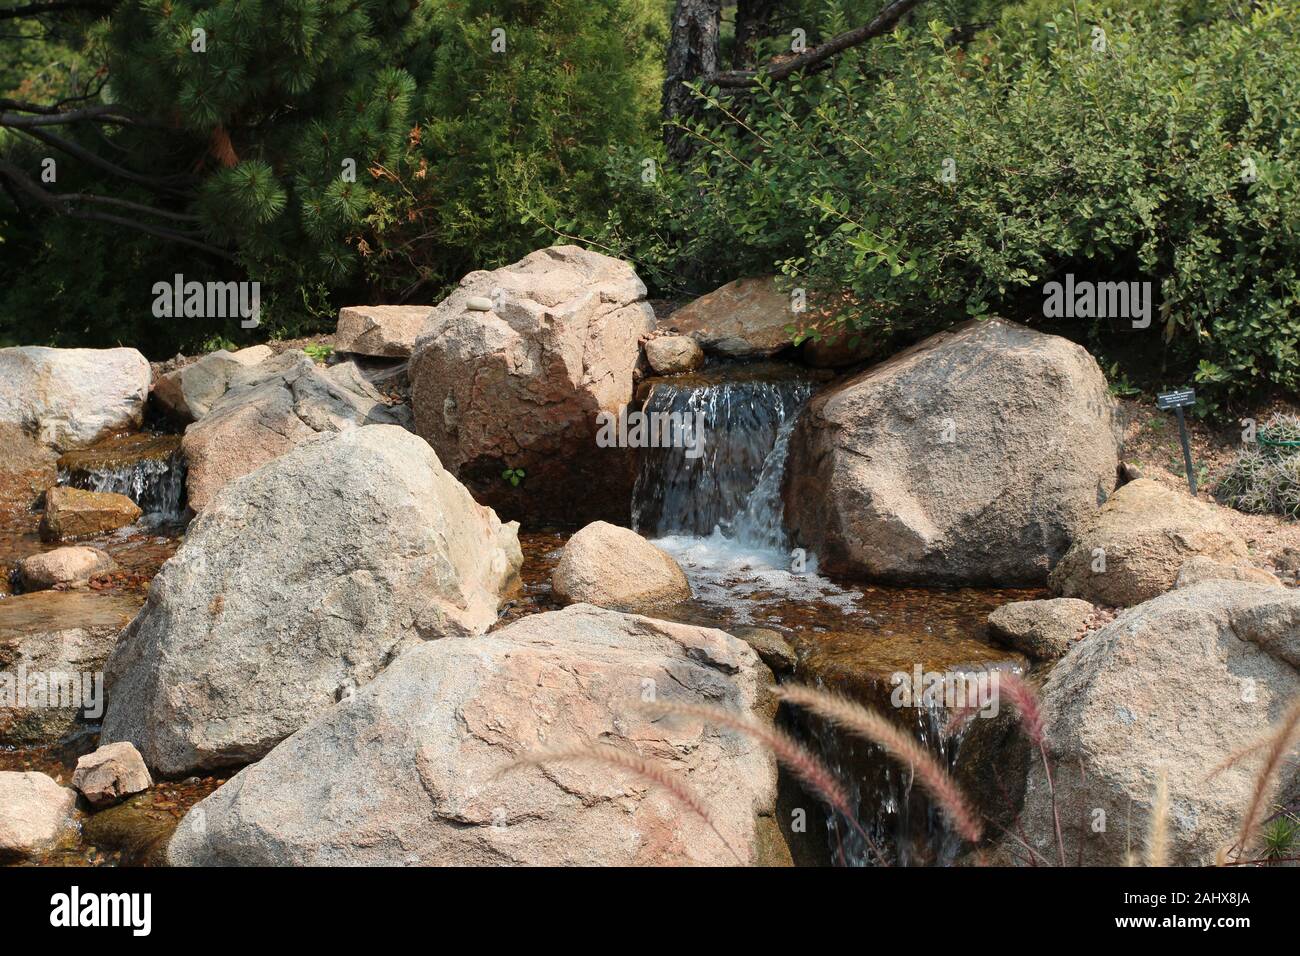 Kleine wateralls über einen Felsen Bett fließt, von Felsen gesäumt, Brunnen Gräser, Sträucher und Evergreens in Colorado, USA Stockfoto